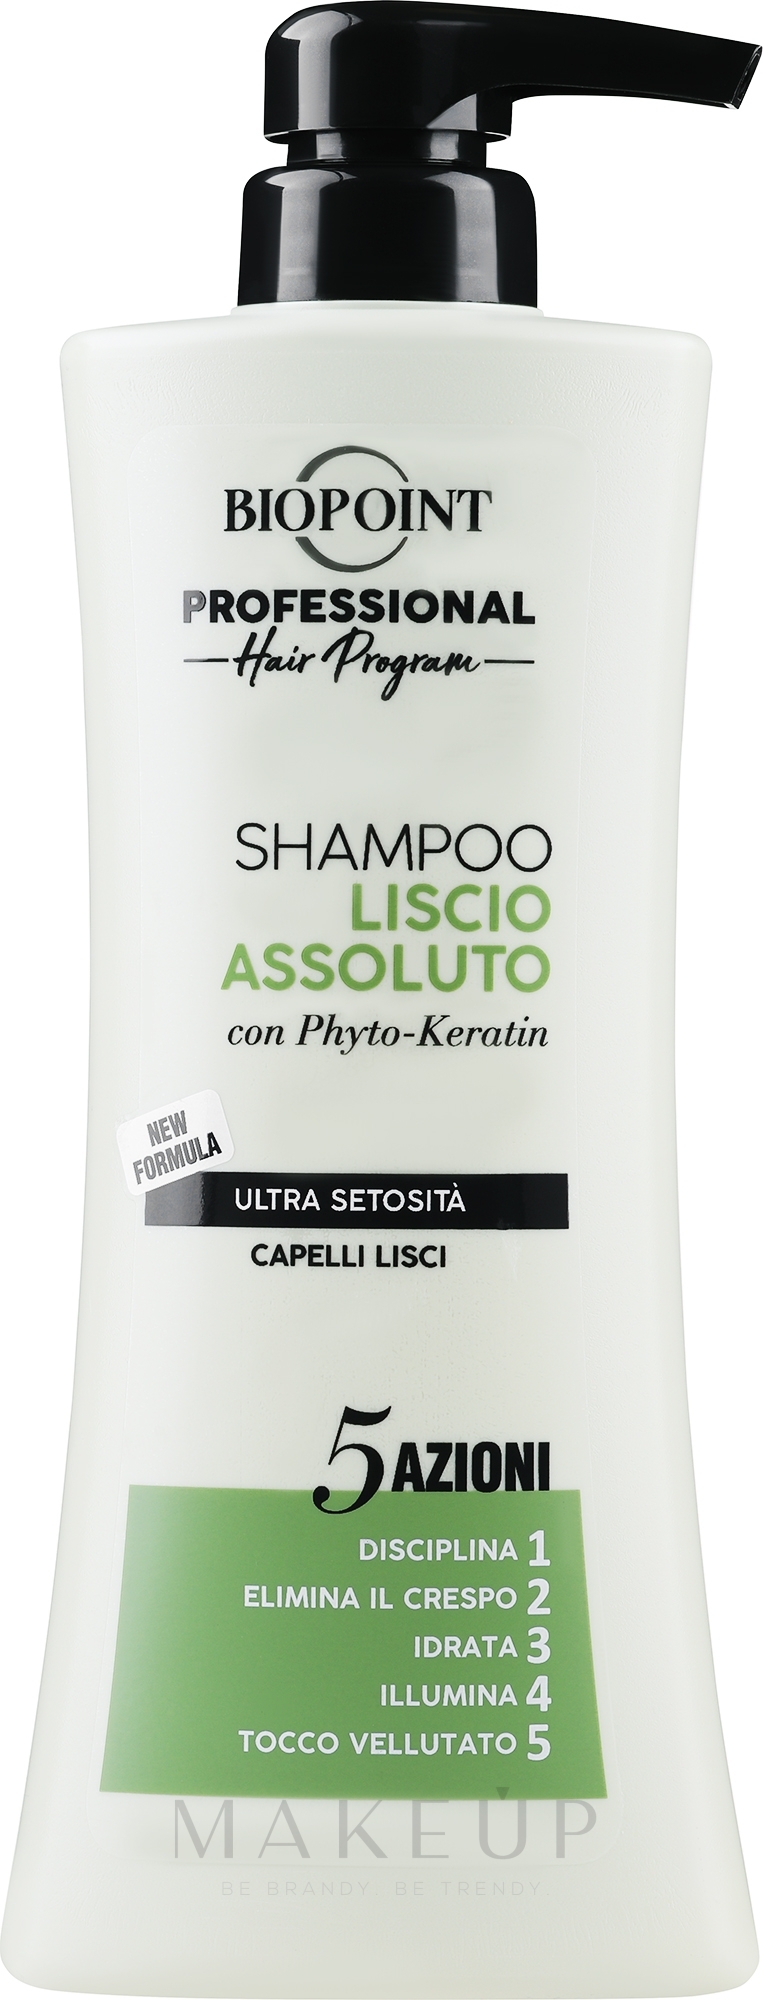 Shampoo für widerspenstiges und krauses Haar - Biopoint Liscio Assoluto Shampoo — Bild 400 ml